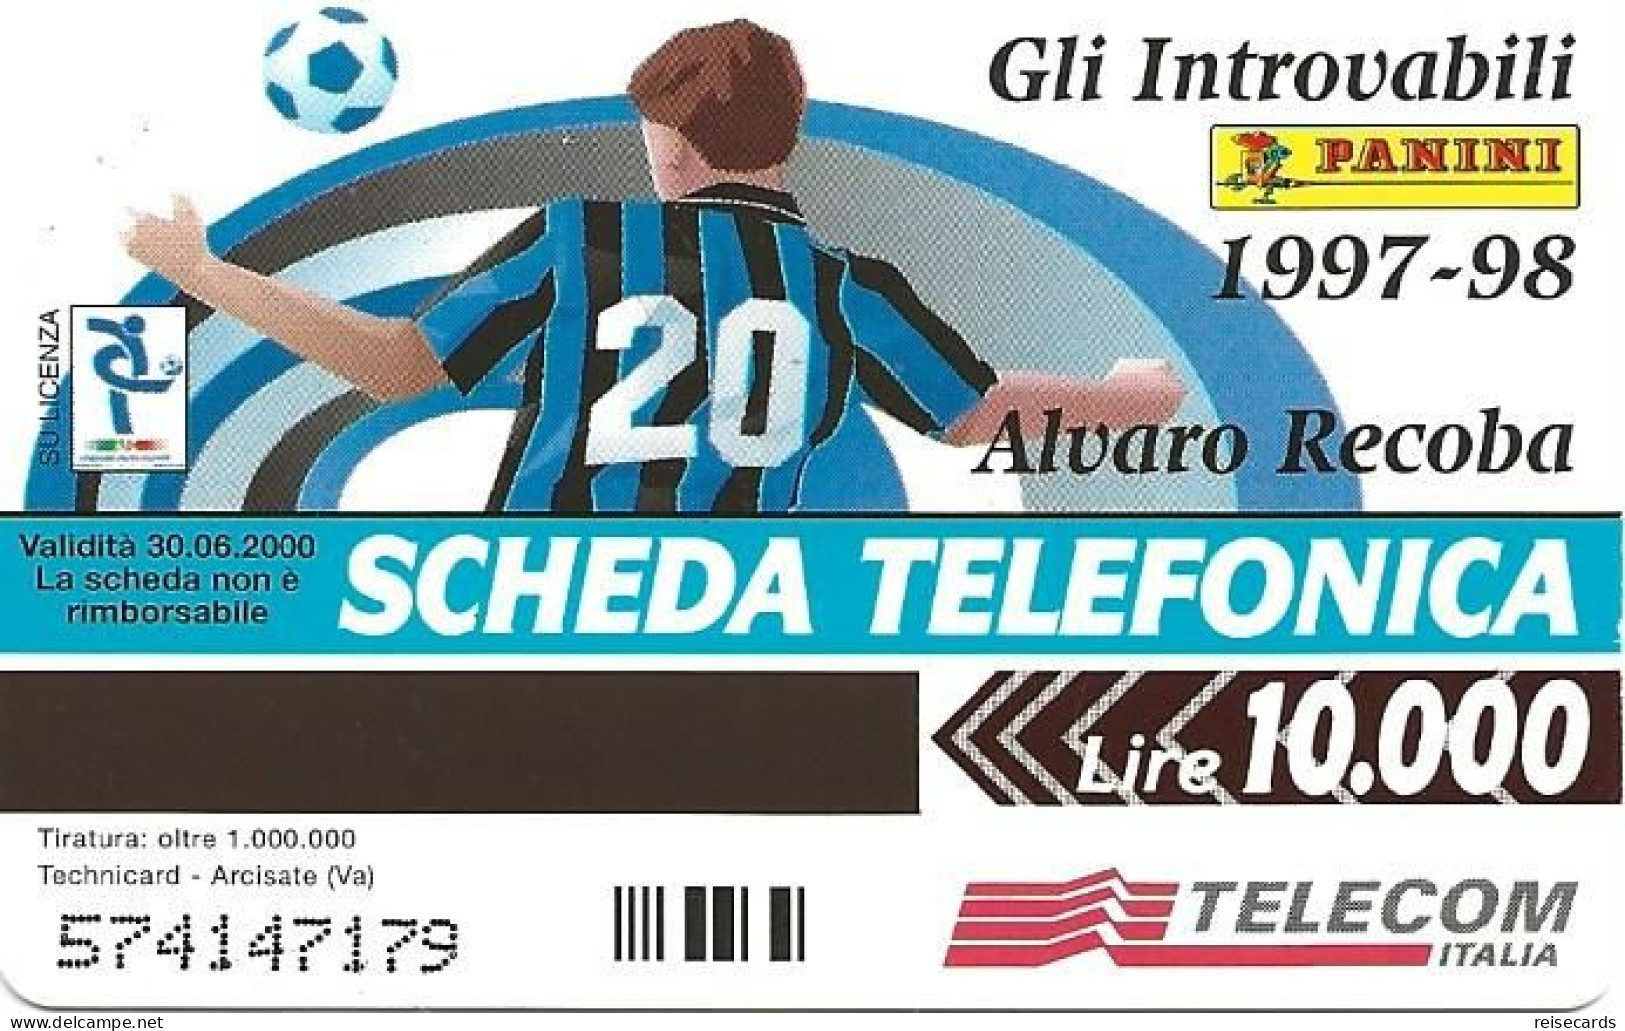 Italy: Telecom Italia - Panini, Alvaro Recoba, Inter - Public Advertising